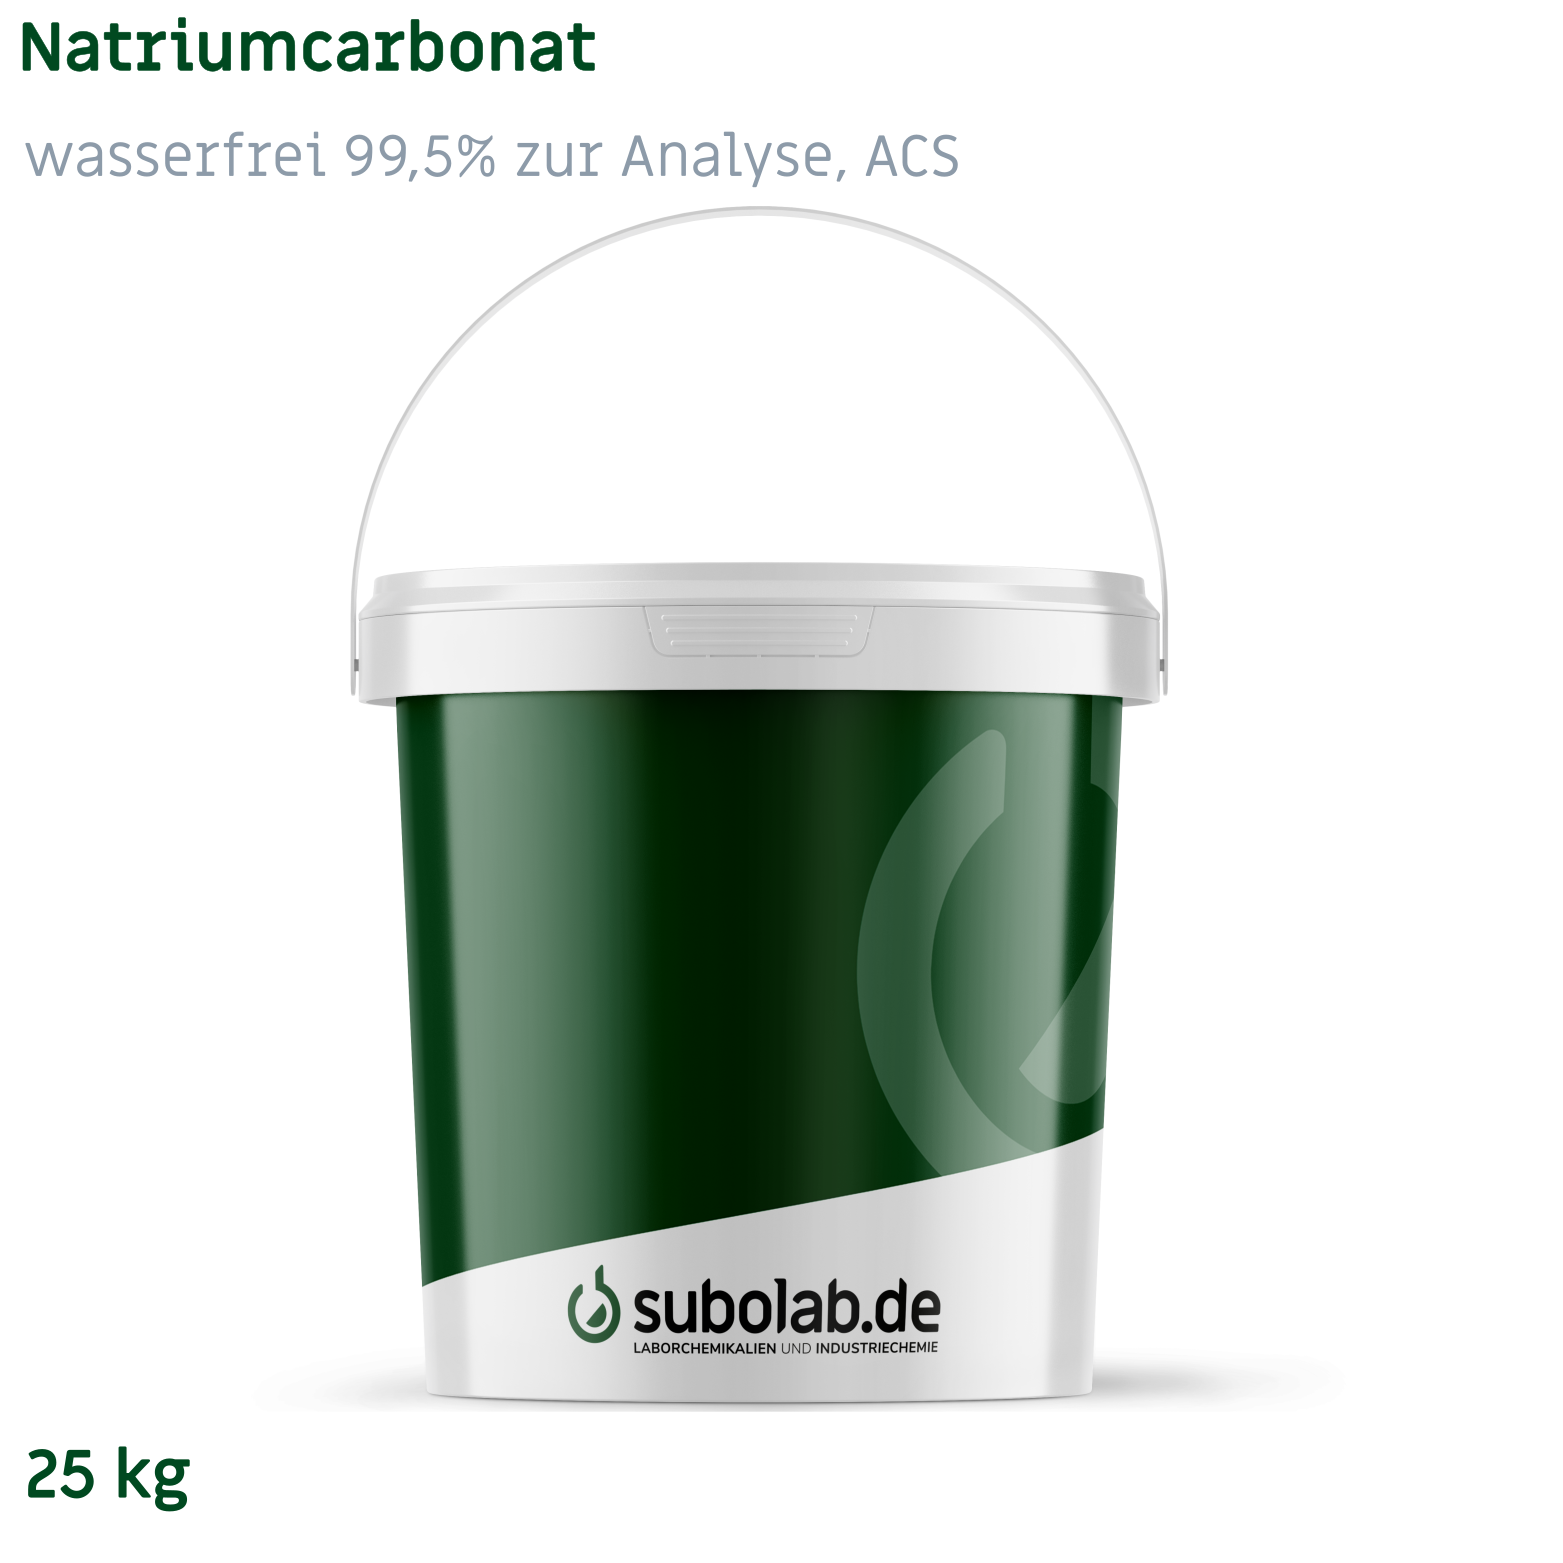 Bild von Natriumcarbonat - wasserfrei 99,5% zur Analyse, ACS (25 kg)